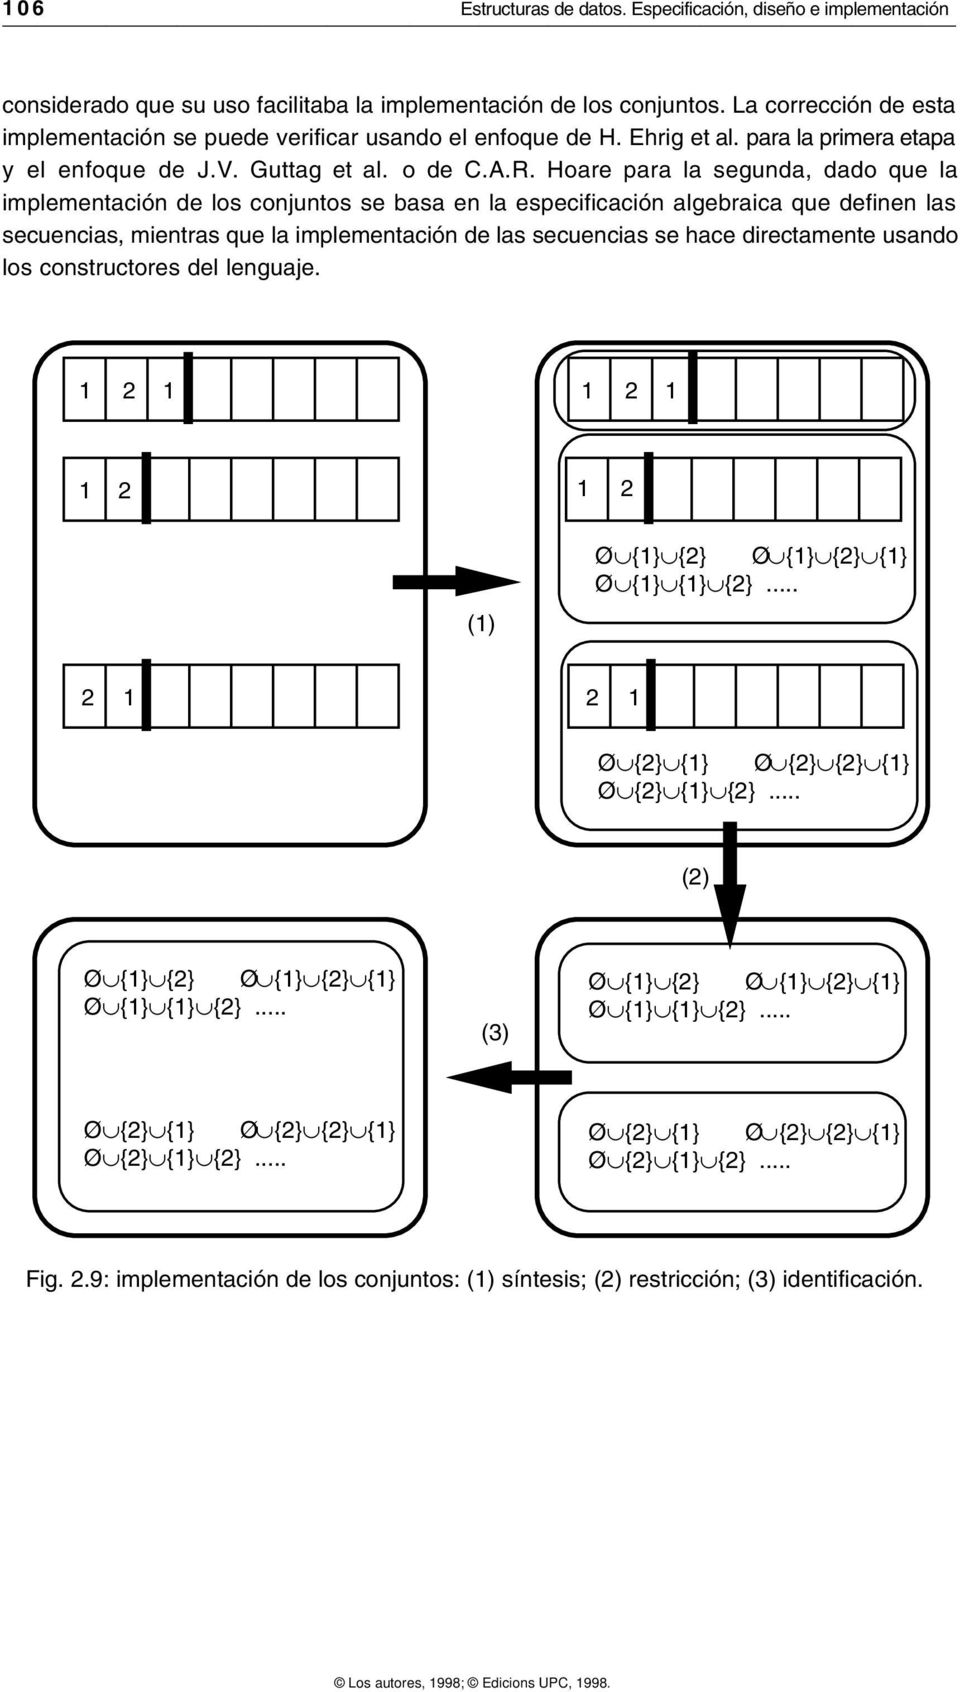 Hoare para la segunda, dado que la implementación de los conjuntos se basa en la especificación algebraica que definen las secuencias, mientras que la implementación de las secuencias se hace